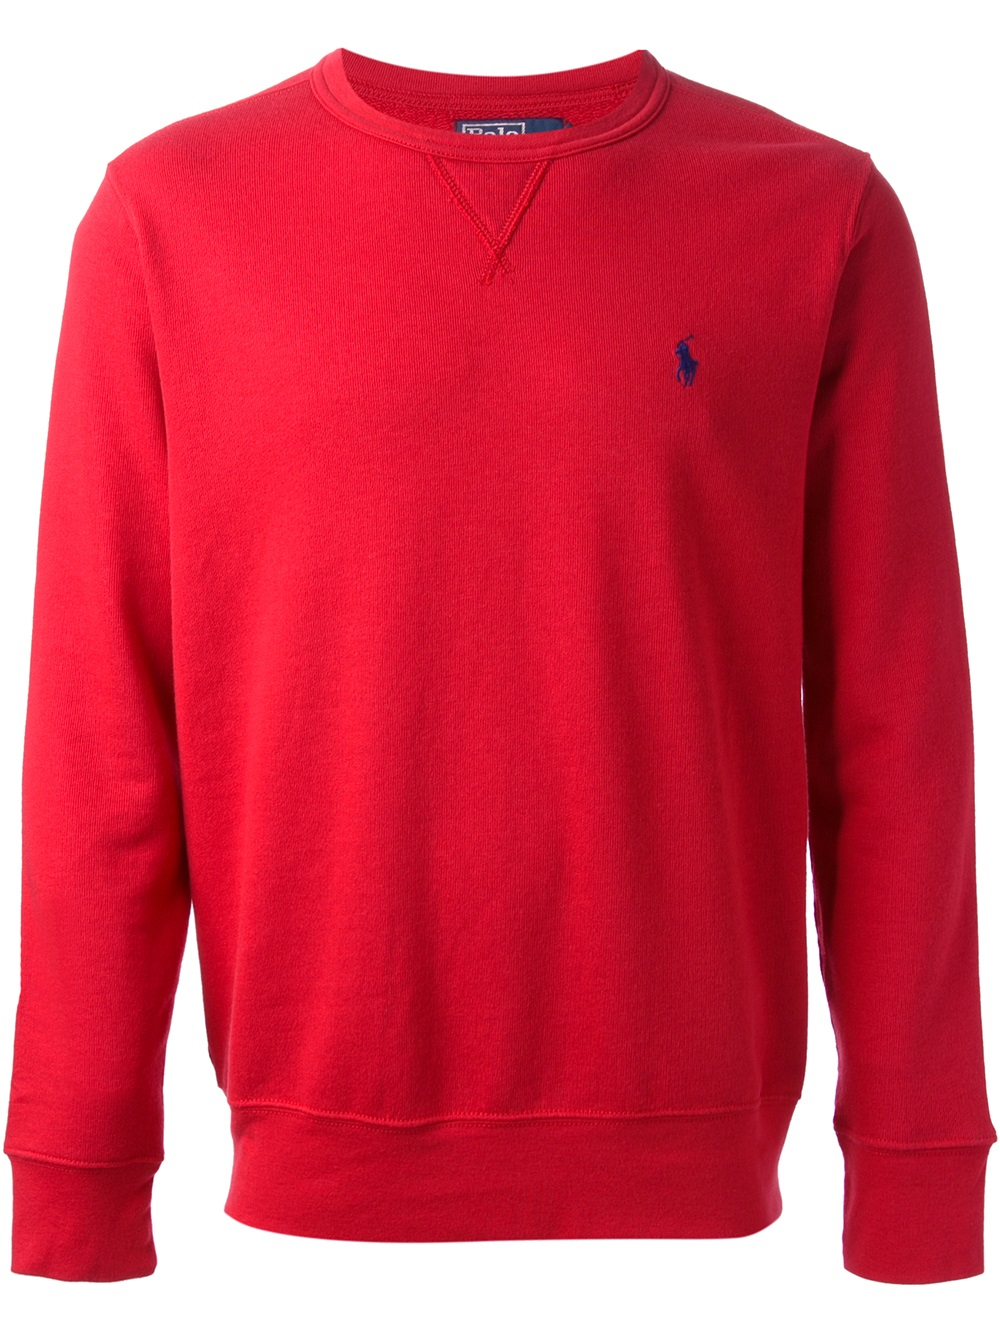 Polo Ralph Lauren Classic Sweatshirt in Red for Men - Lyst